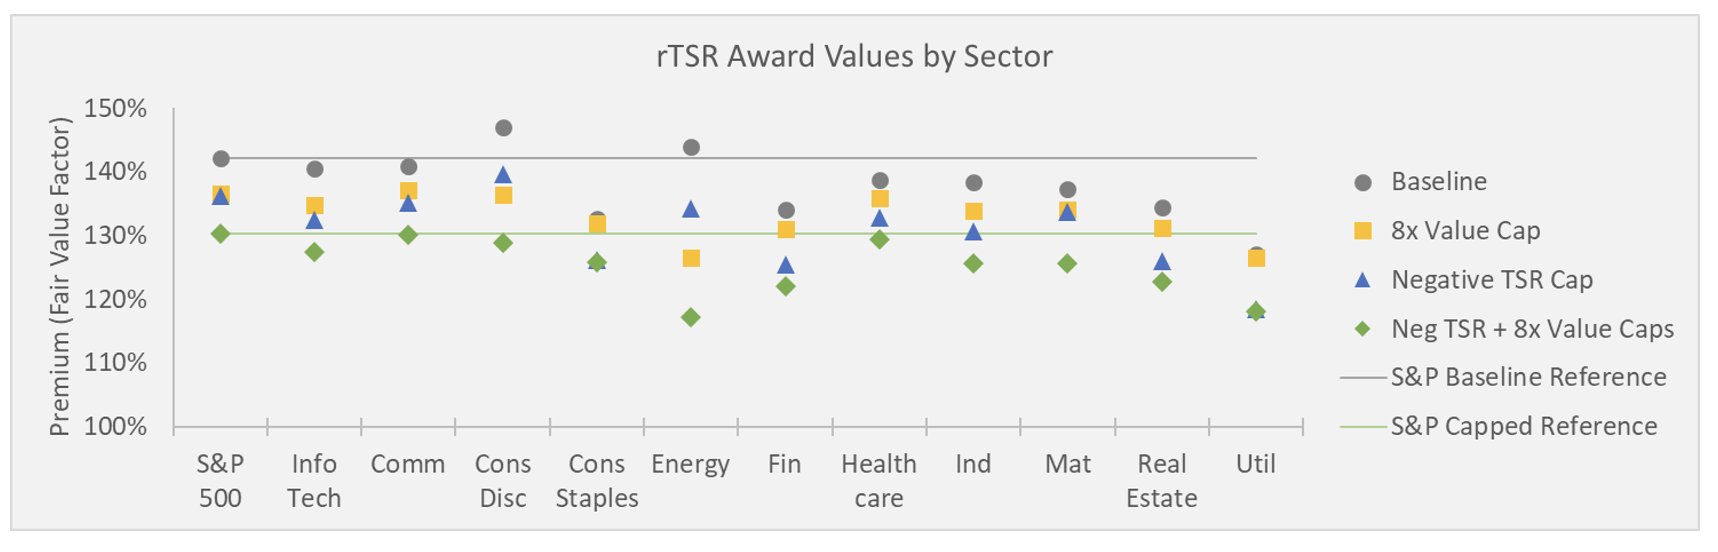 Equity Methods - Rising rTSR Fair Values Exhibit 6